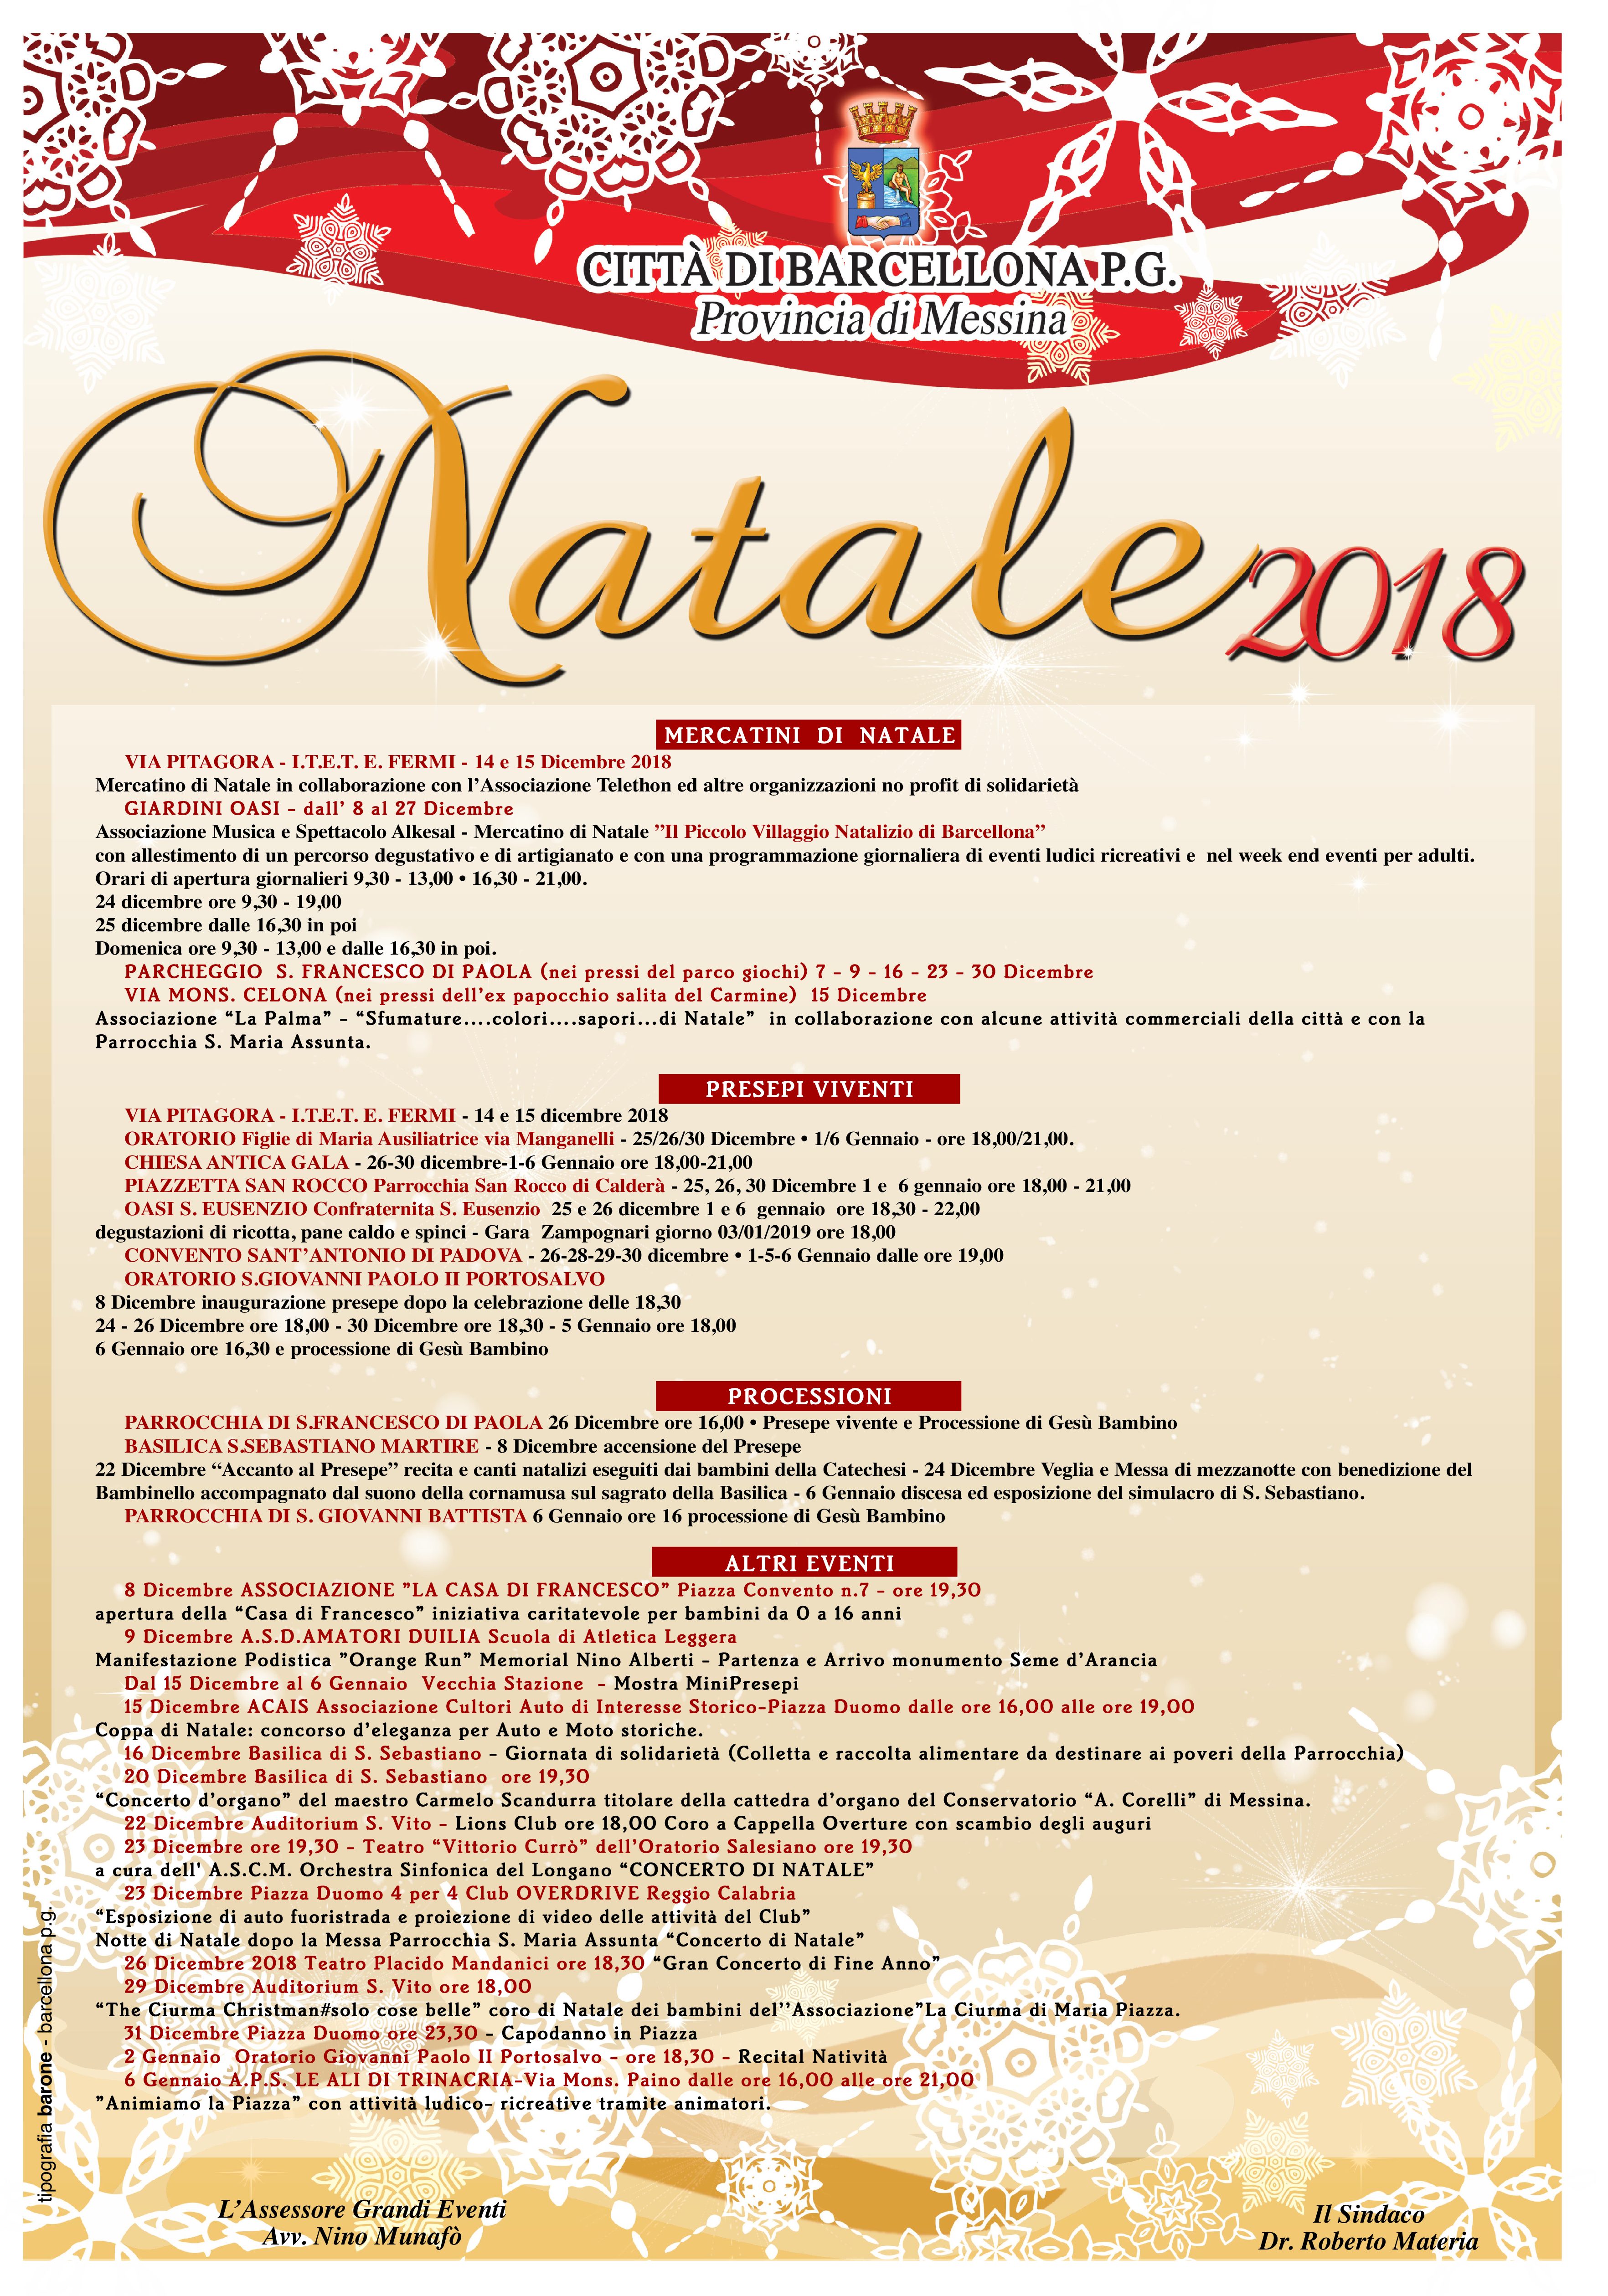 Barcellona PG. Comune, il programma delle festività natalizie 2018-2019